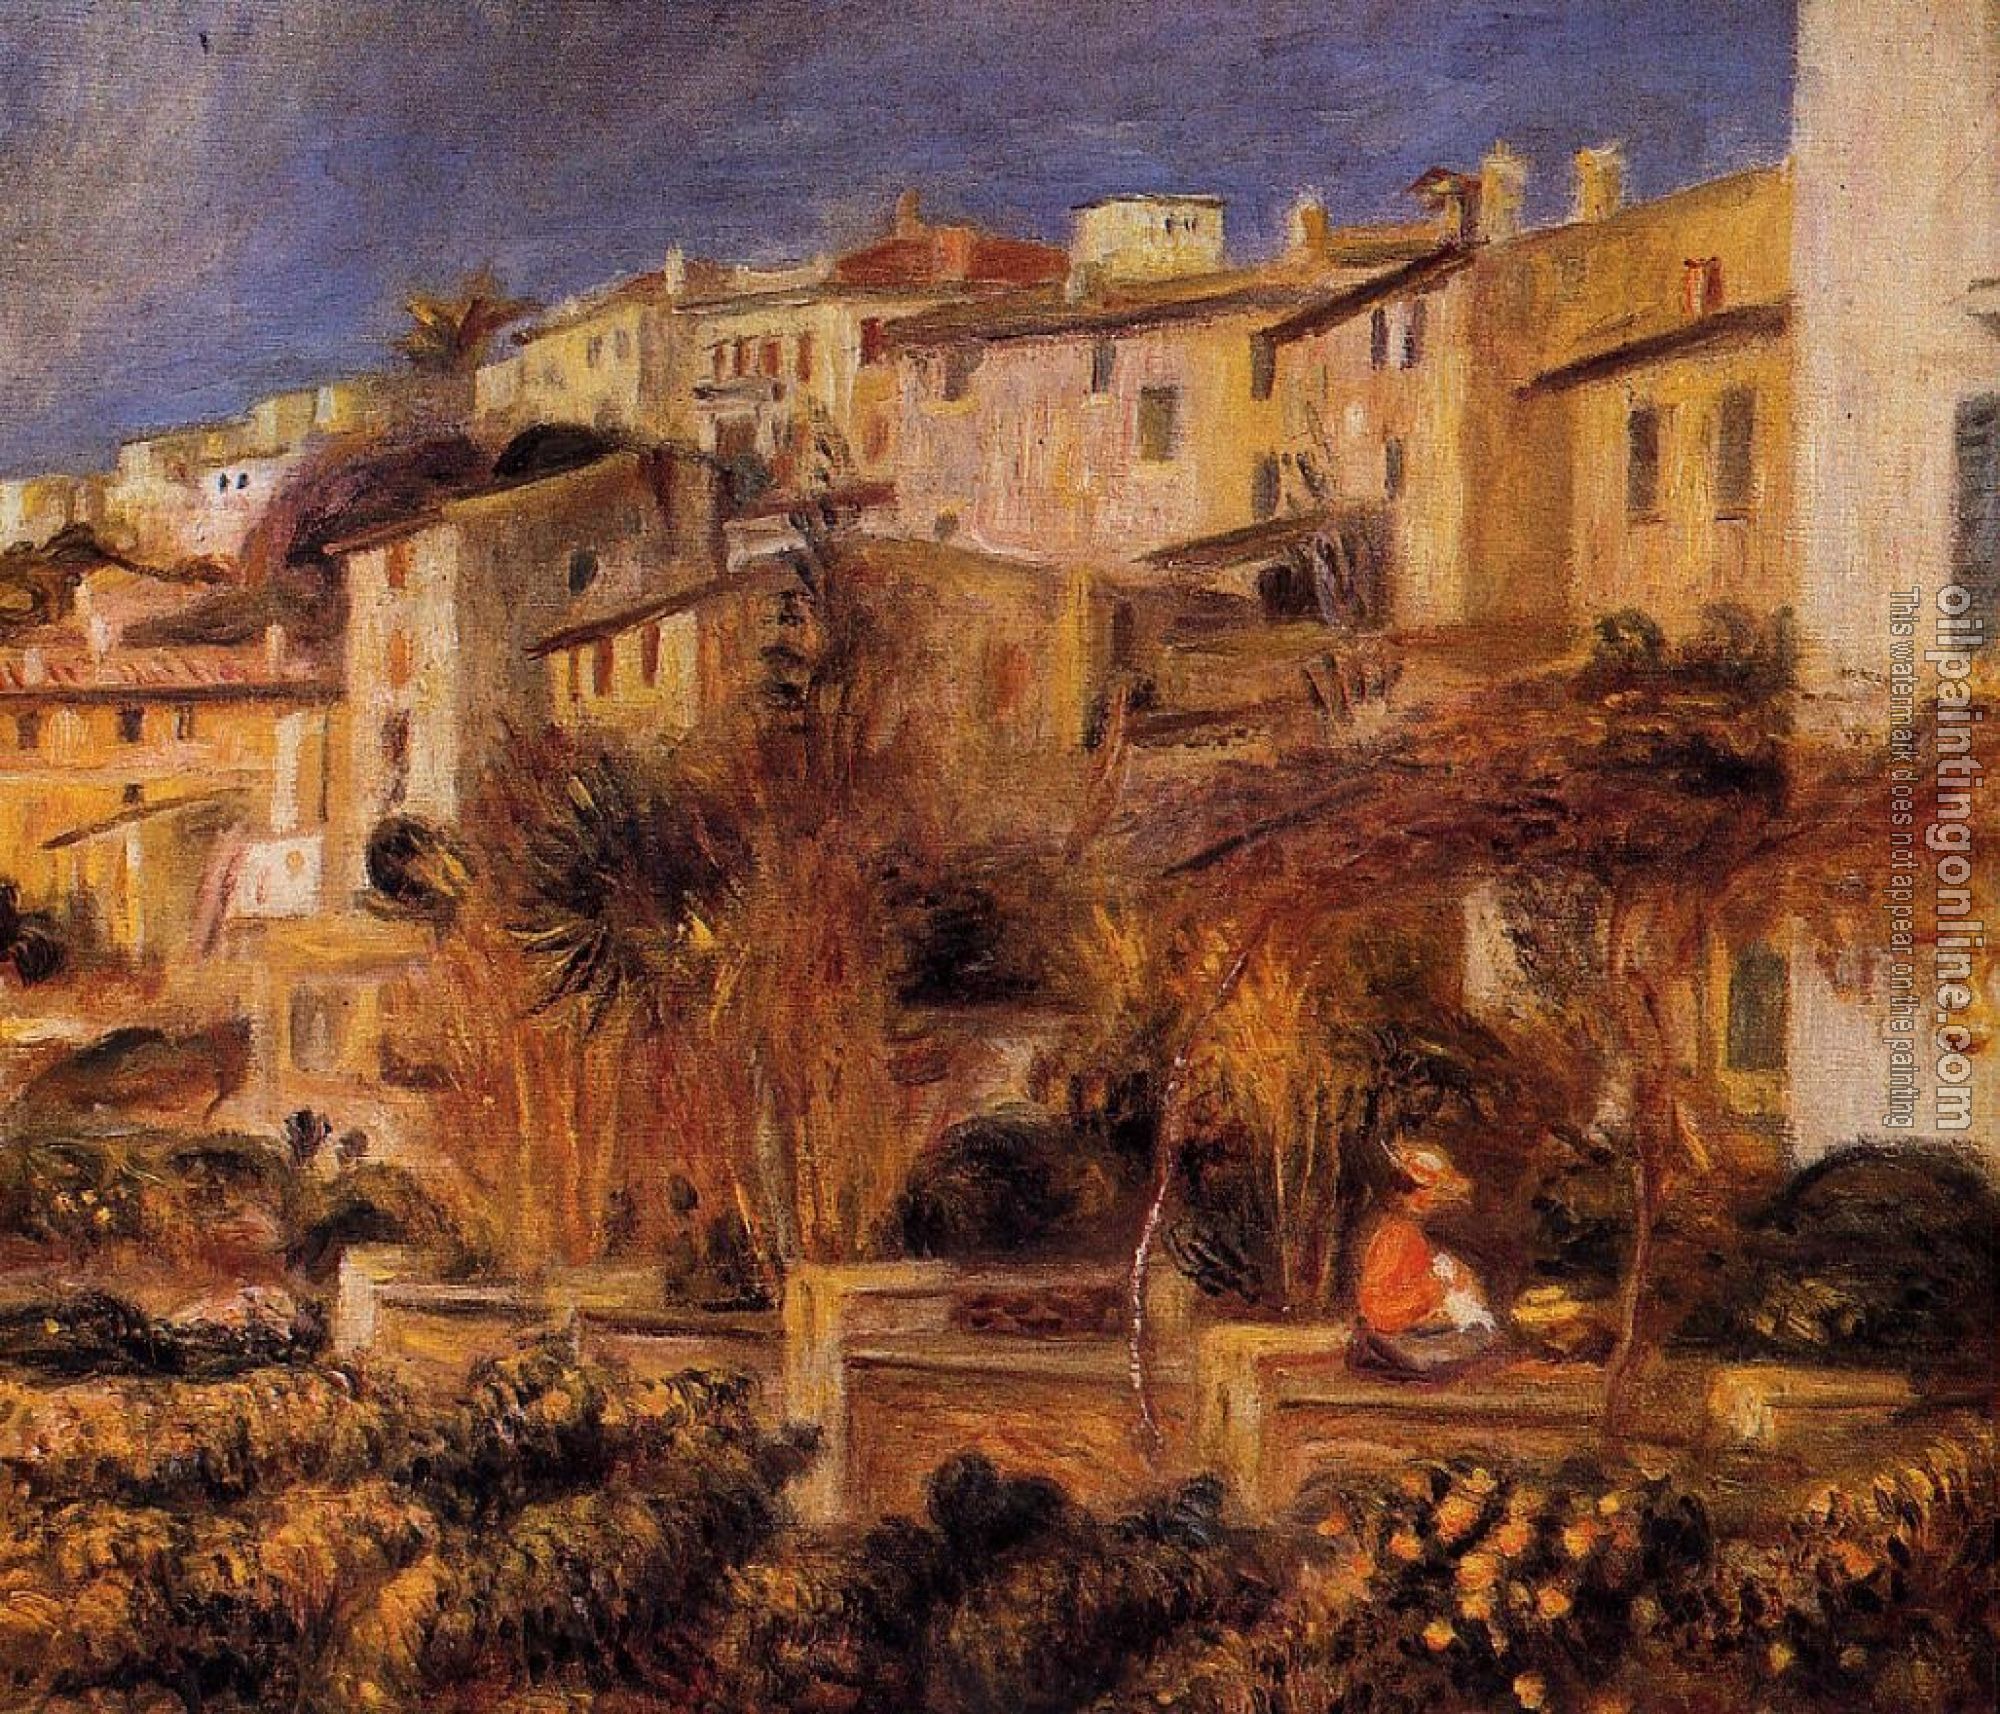 Renoir, Pierre Auguste - Terraces at Cagnes